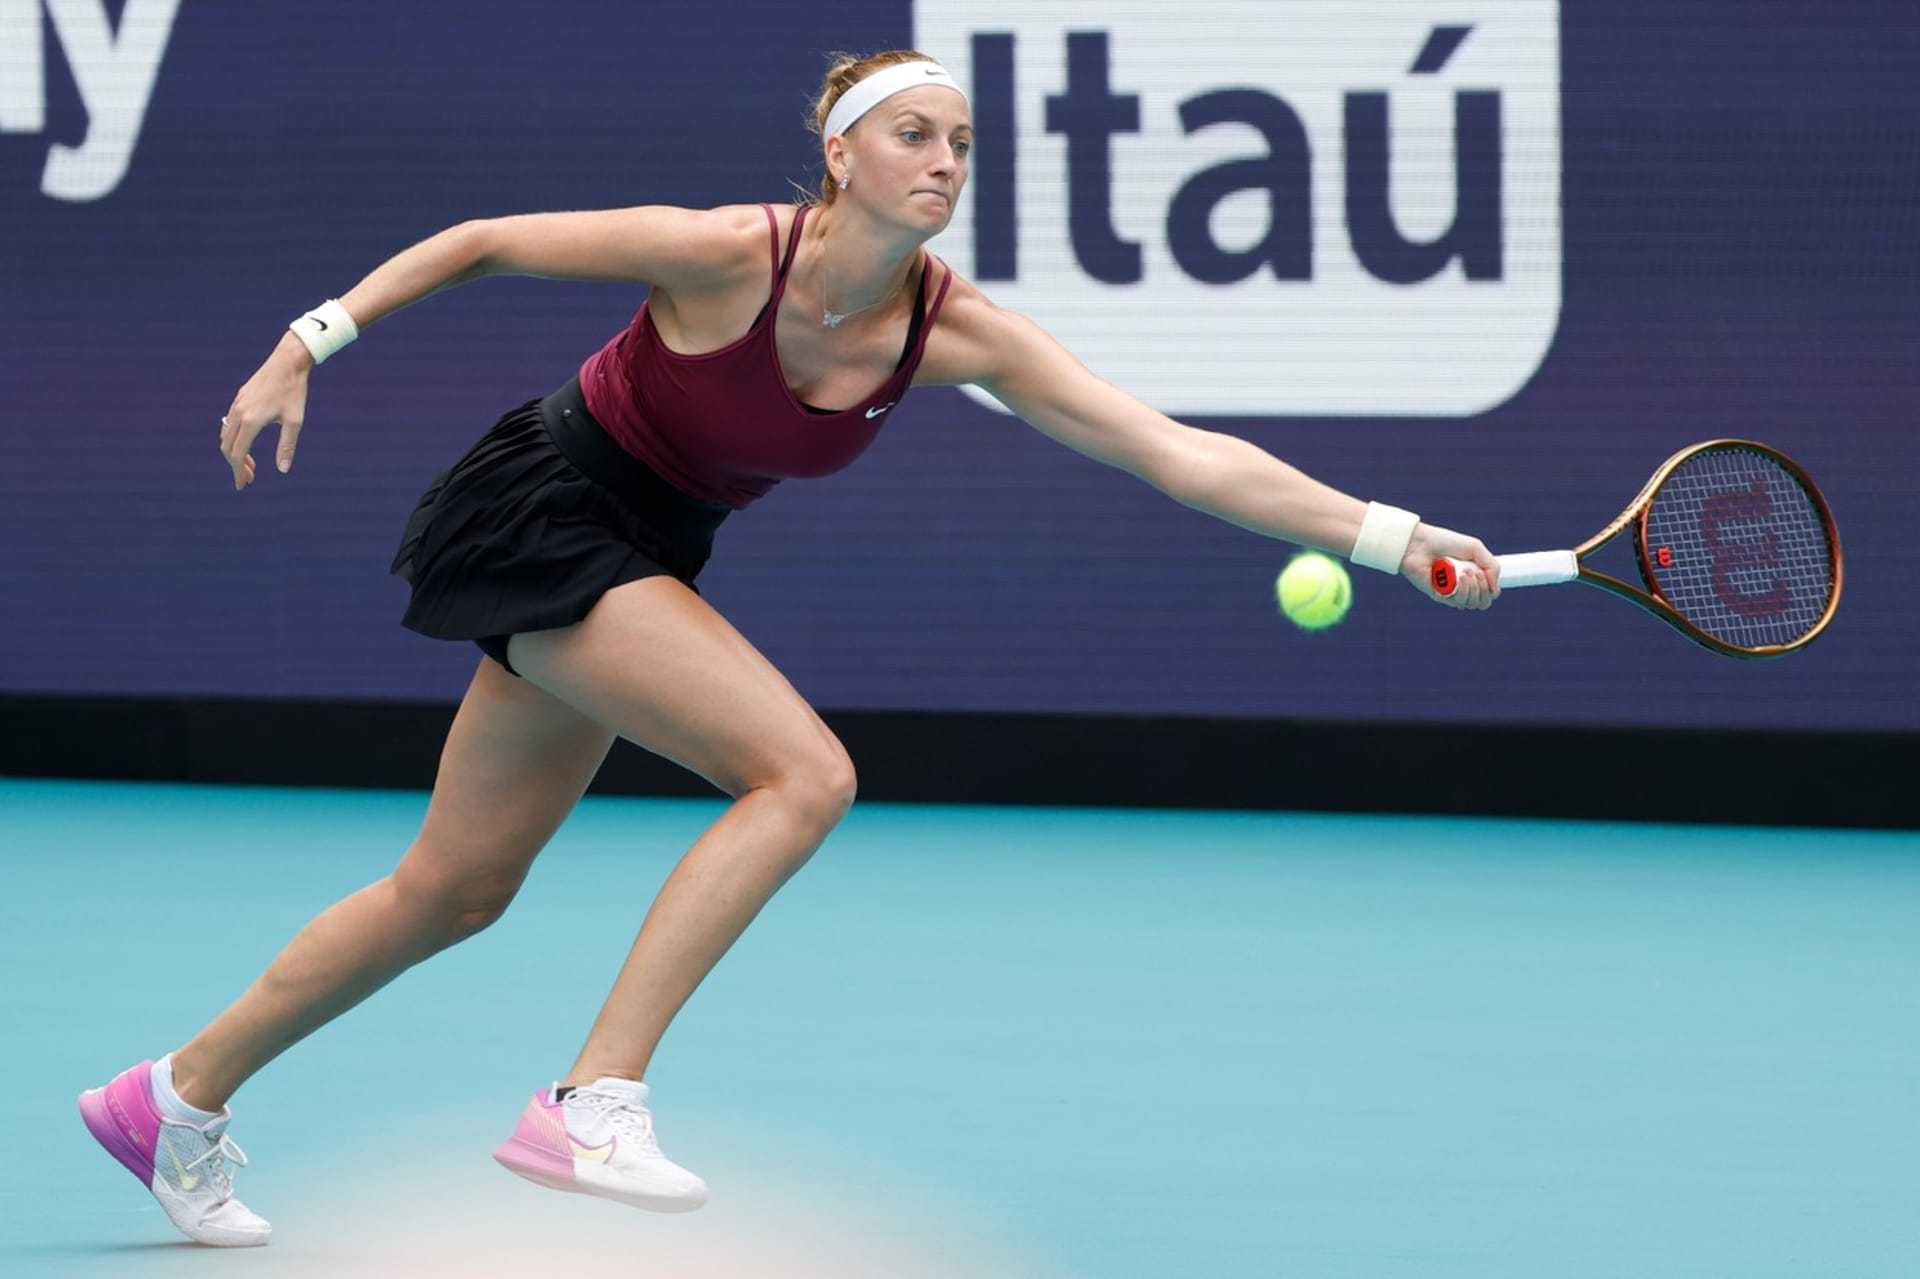 Petra Kvitová porazila ve finále tenisového turnaje v Miami Jelenu Rybakinovou z Kazachstánu 7:6, 6:2 a získala jubilejní 30. titul na okruhu WTA.